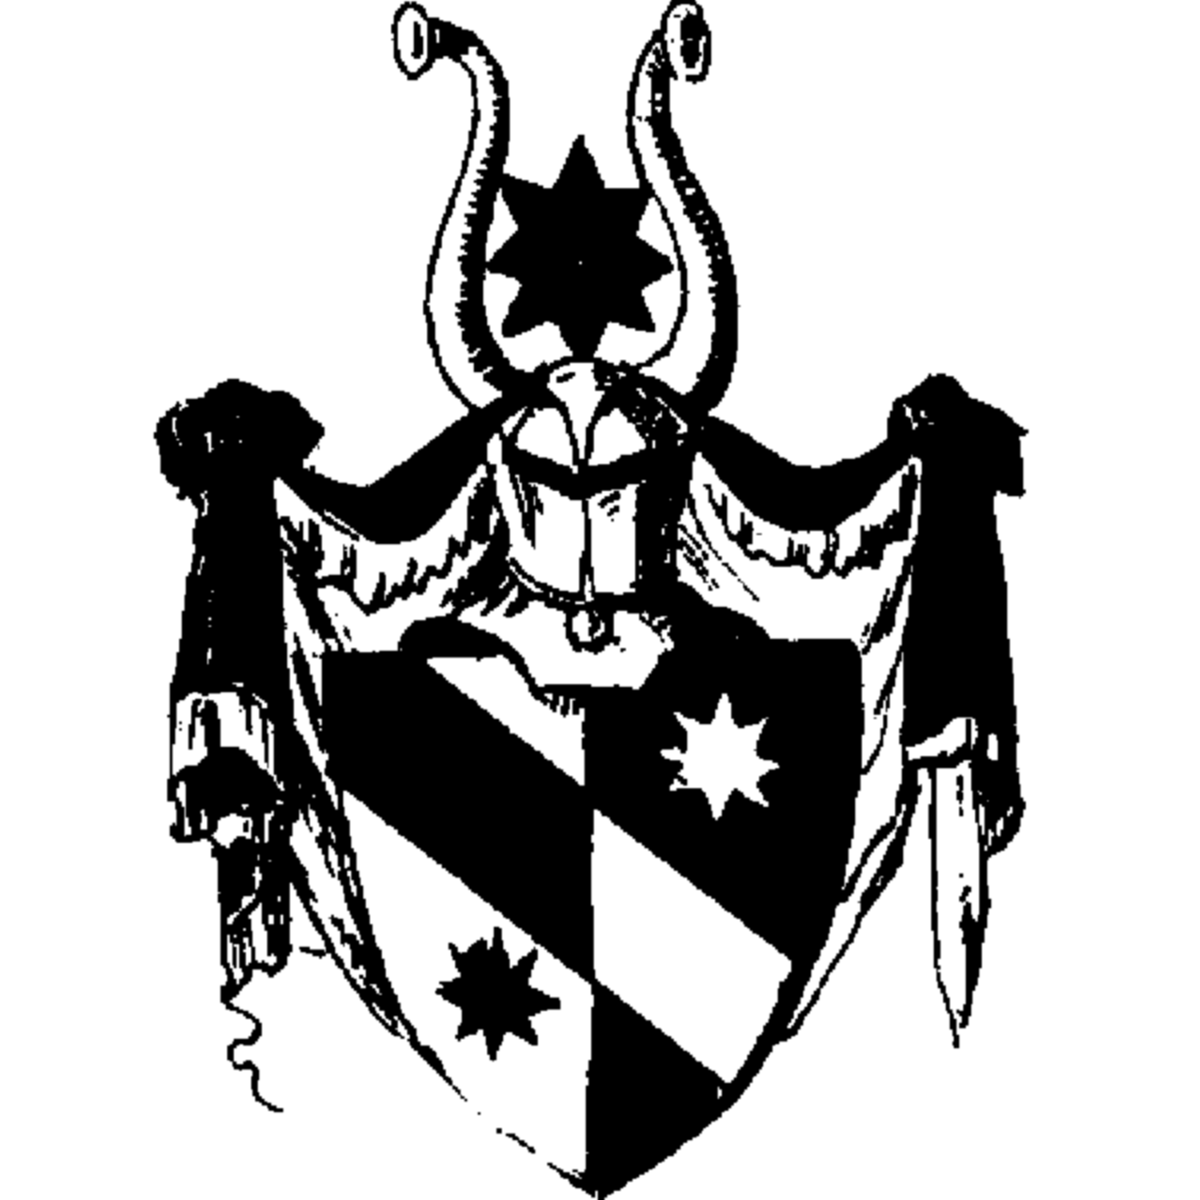 Wappen der Familie Losa